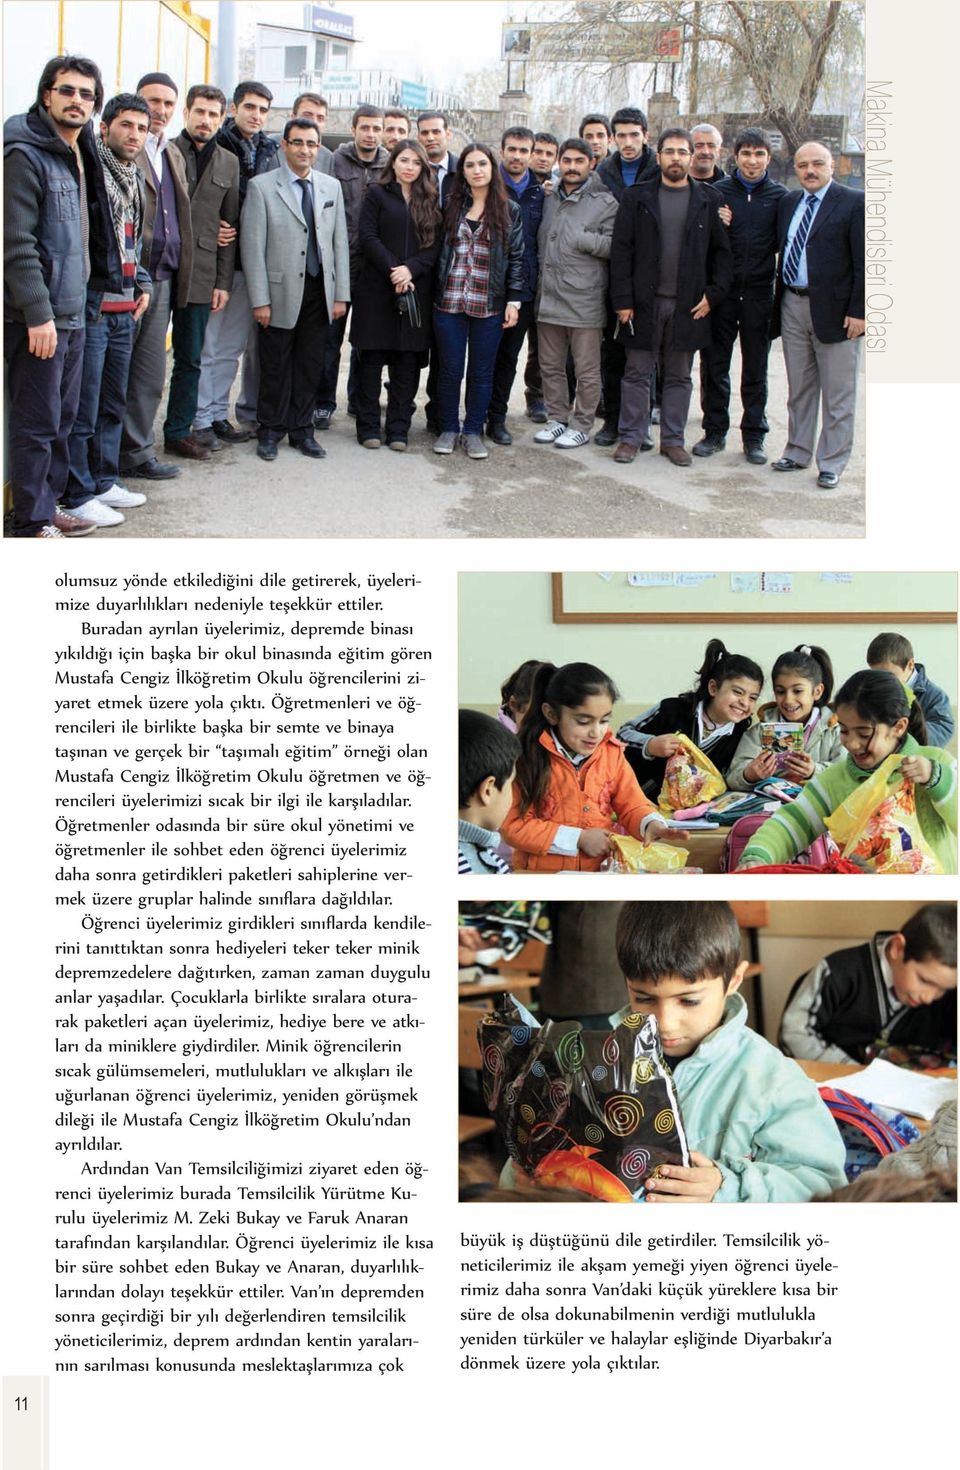 Öğretmenleri ve öğrencileri ile birlikte başka bir semte ve binaya taşınan ve gerçek bir taşımalı eğitim örneği olan Mustafa Cengiz İlköğretim Okulu öğretmen ve öğrencileri üyelerimizi sıcak bir ilgi